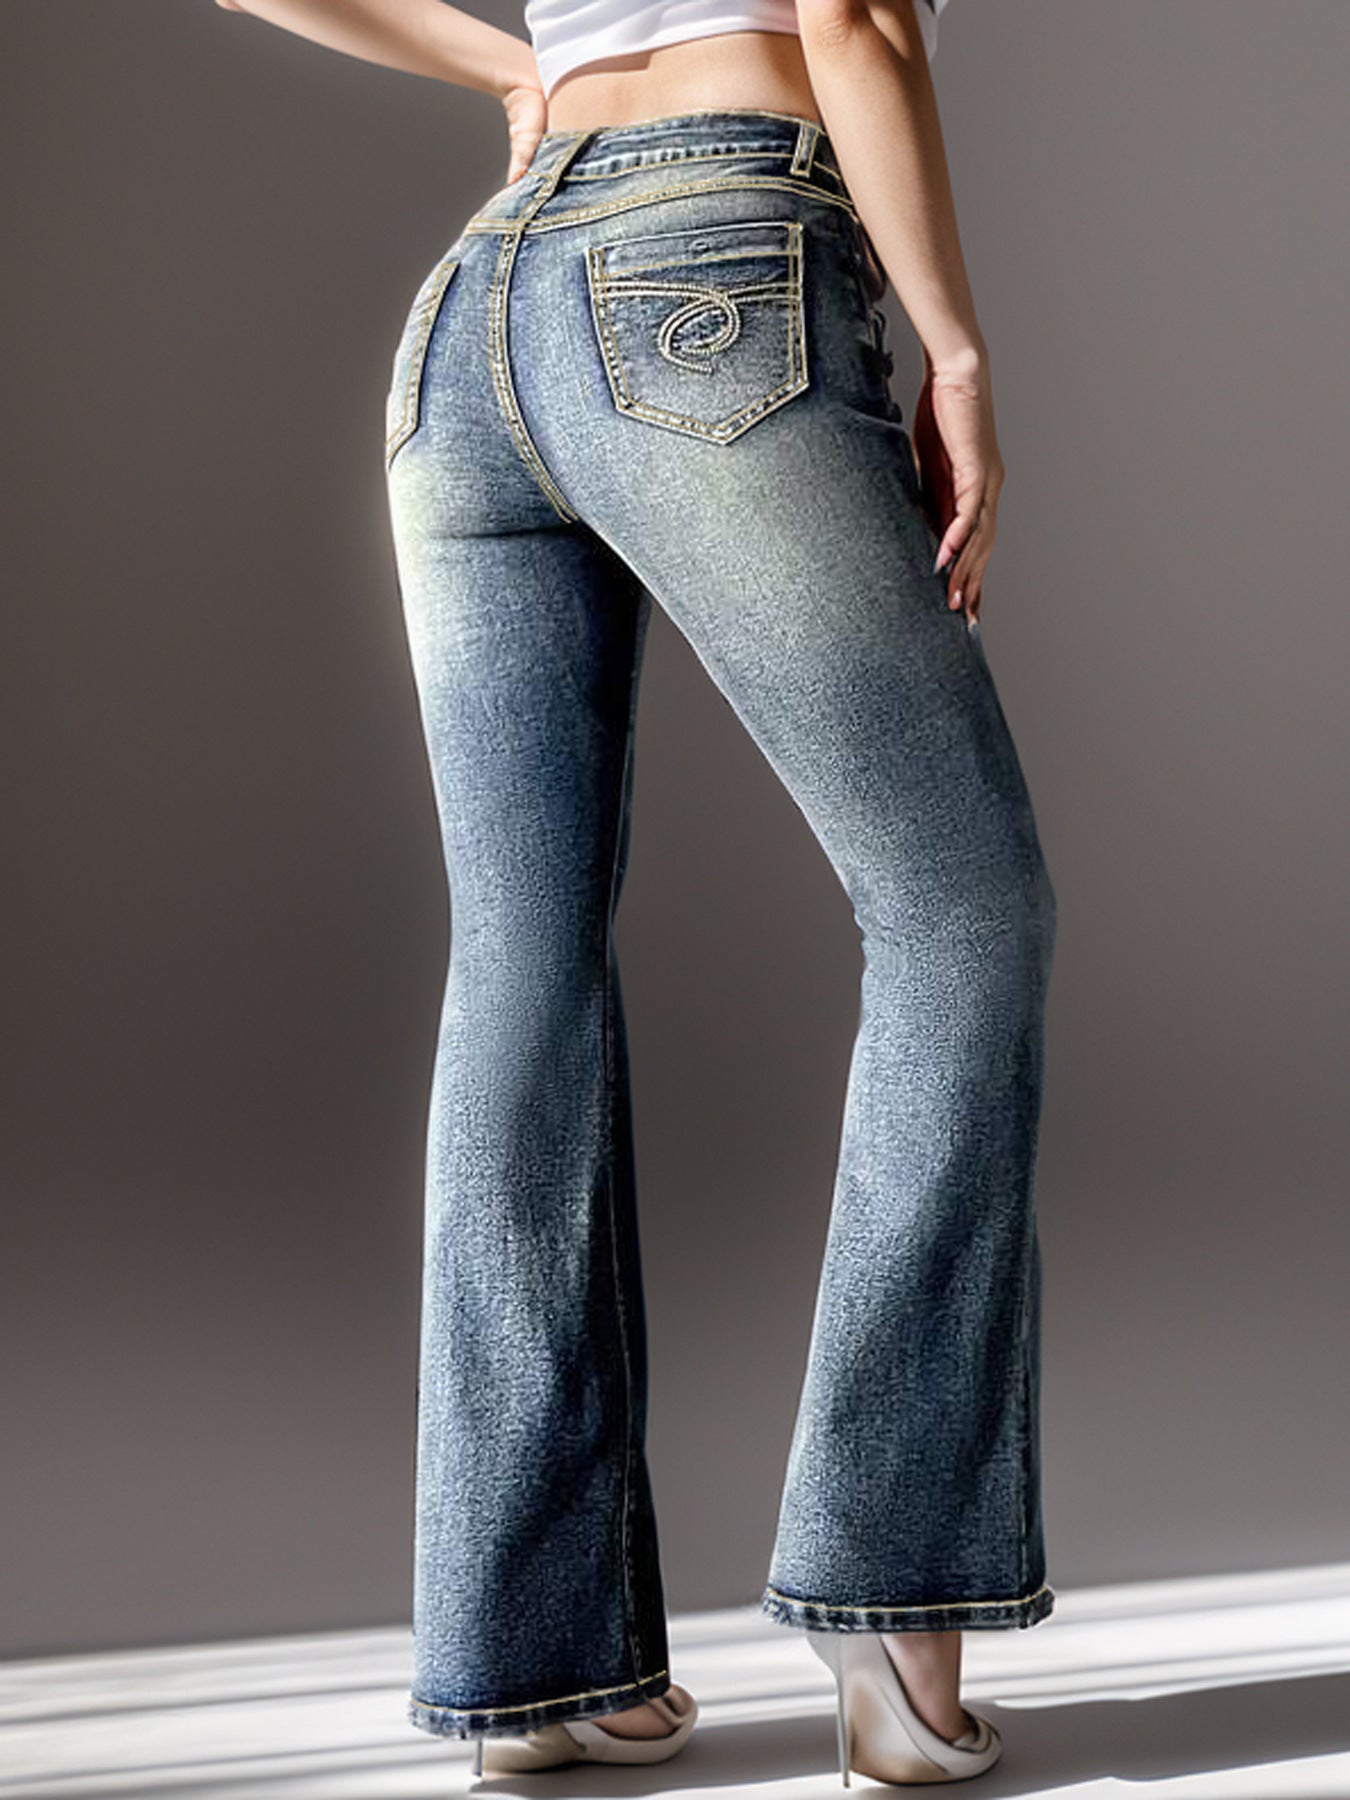 Women's Vintage Jeans High Elastic Pocket Embroidered Vintage Jeans